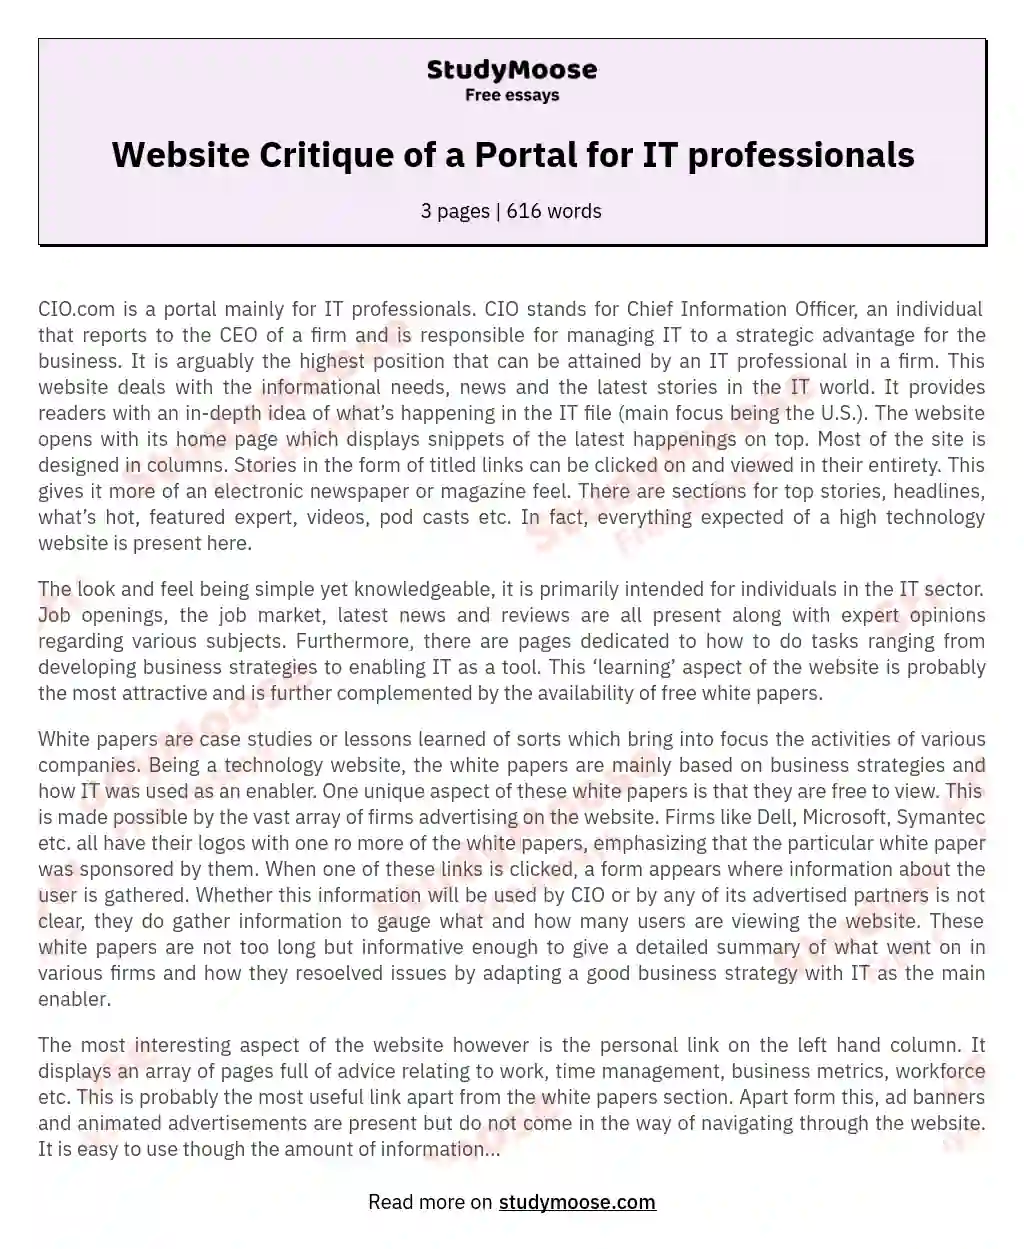 Website Critique of a Portal for IT professionals essay